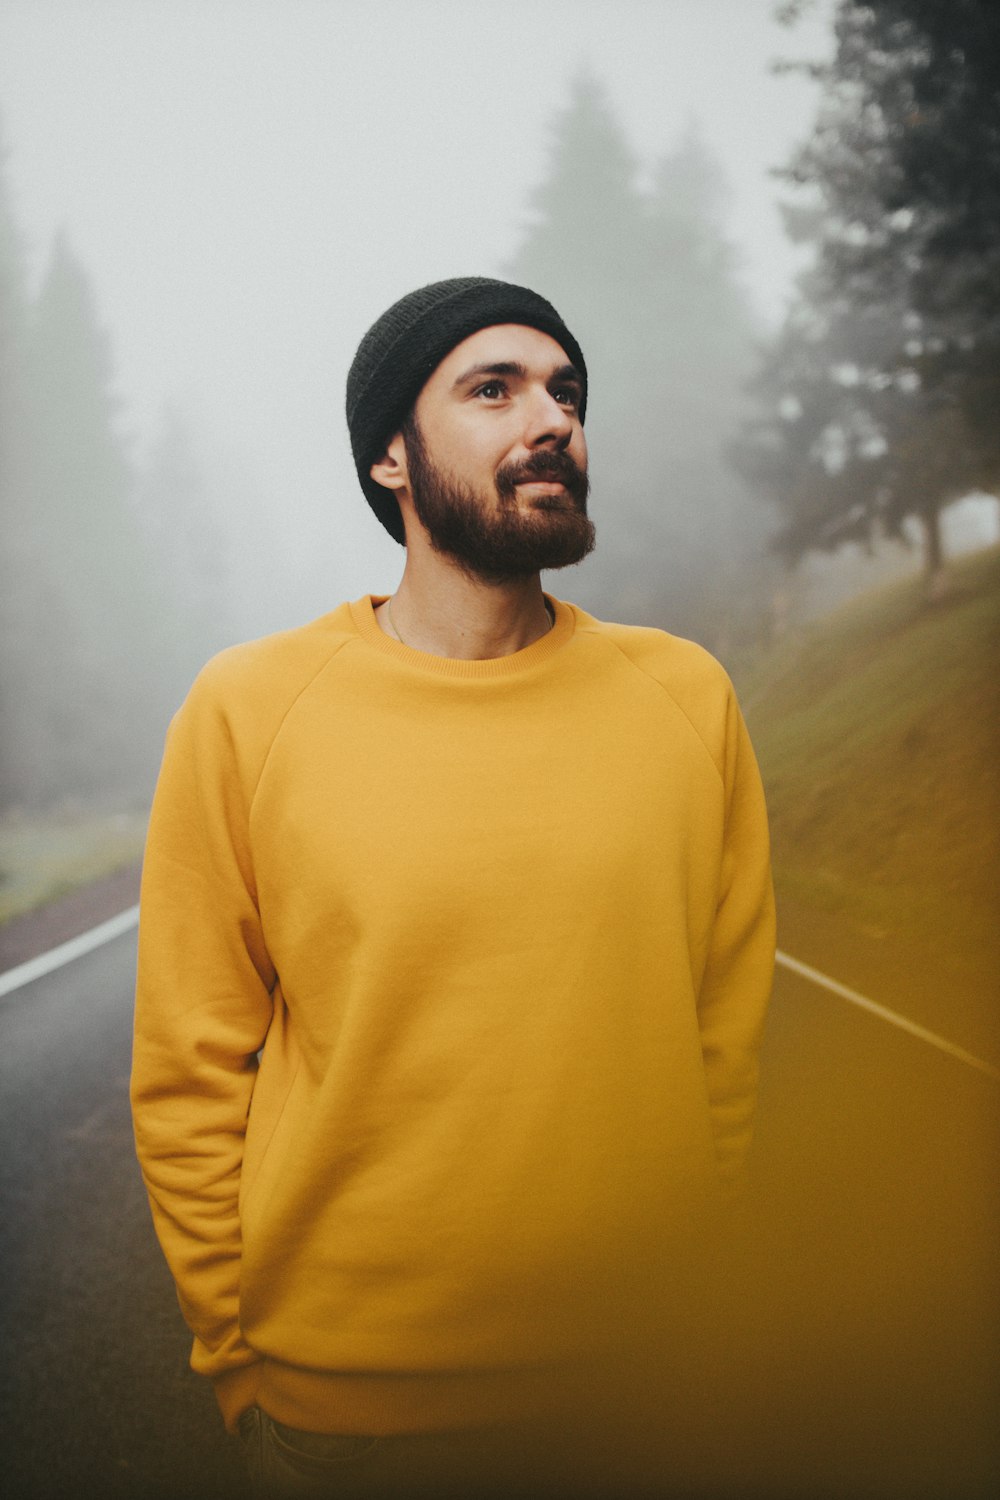 노란 터틀넥 스웨터를 입은 남자가 푸른 잔디밭 근처에 서 있다